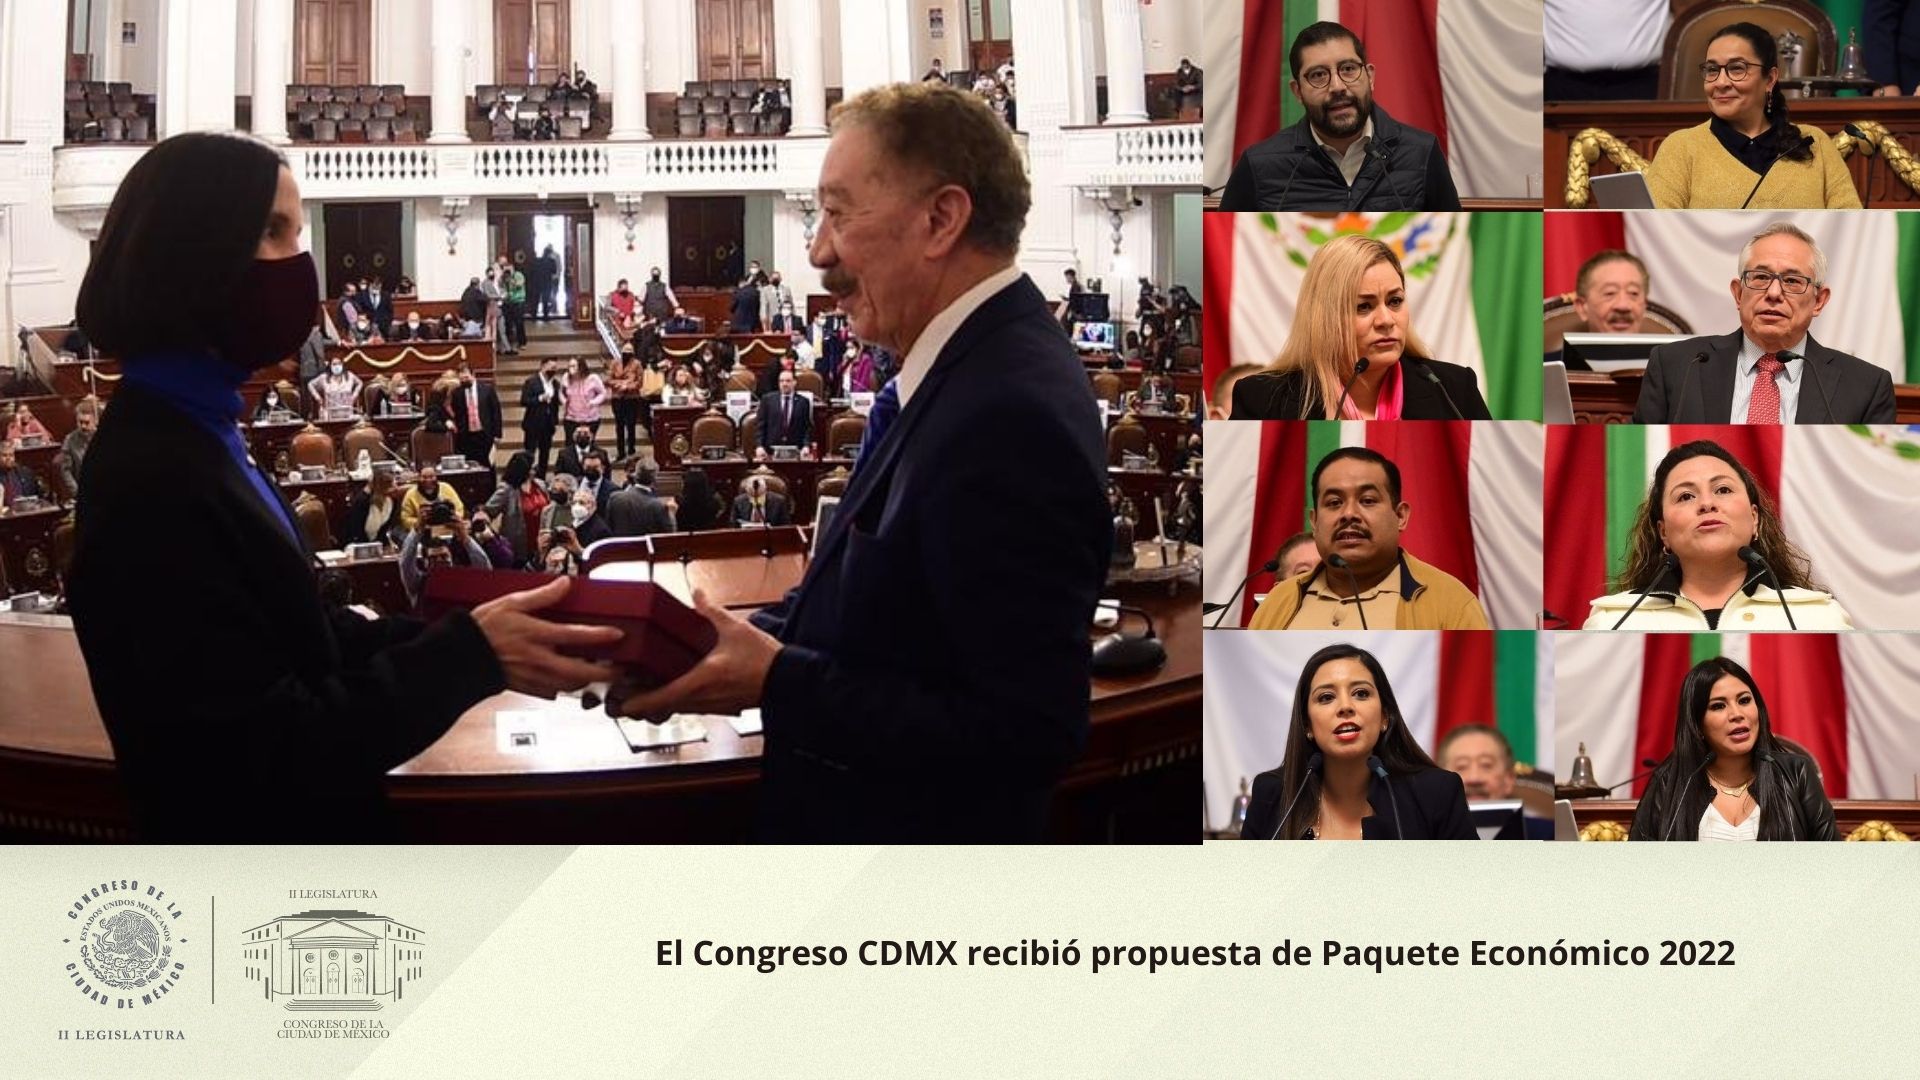 El Congreso CDMX recibió propuesta de Paquete Económico 2022  